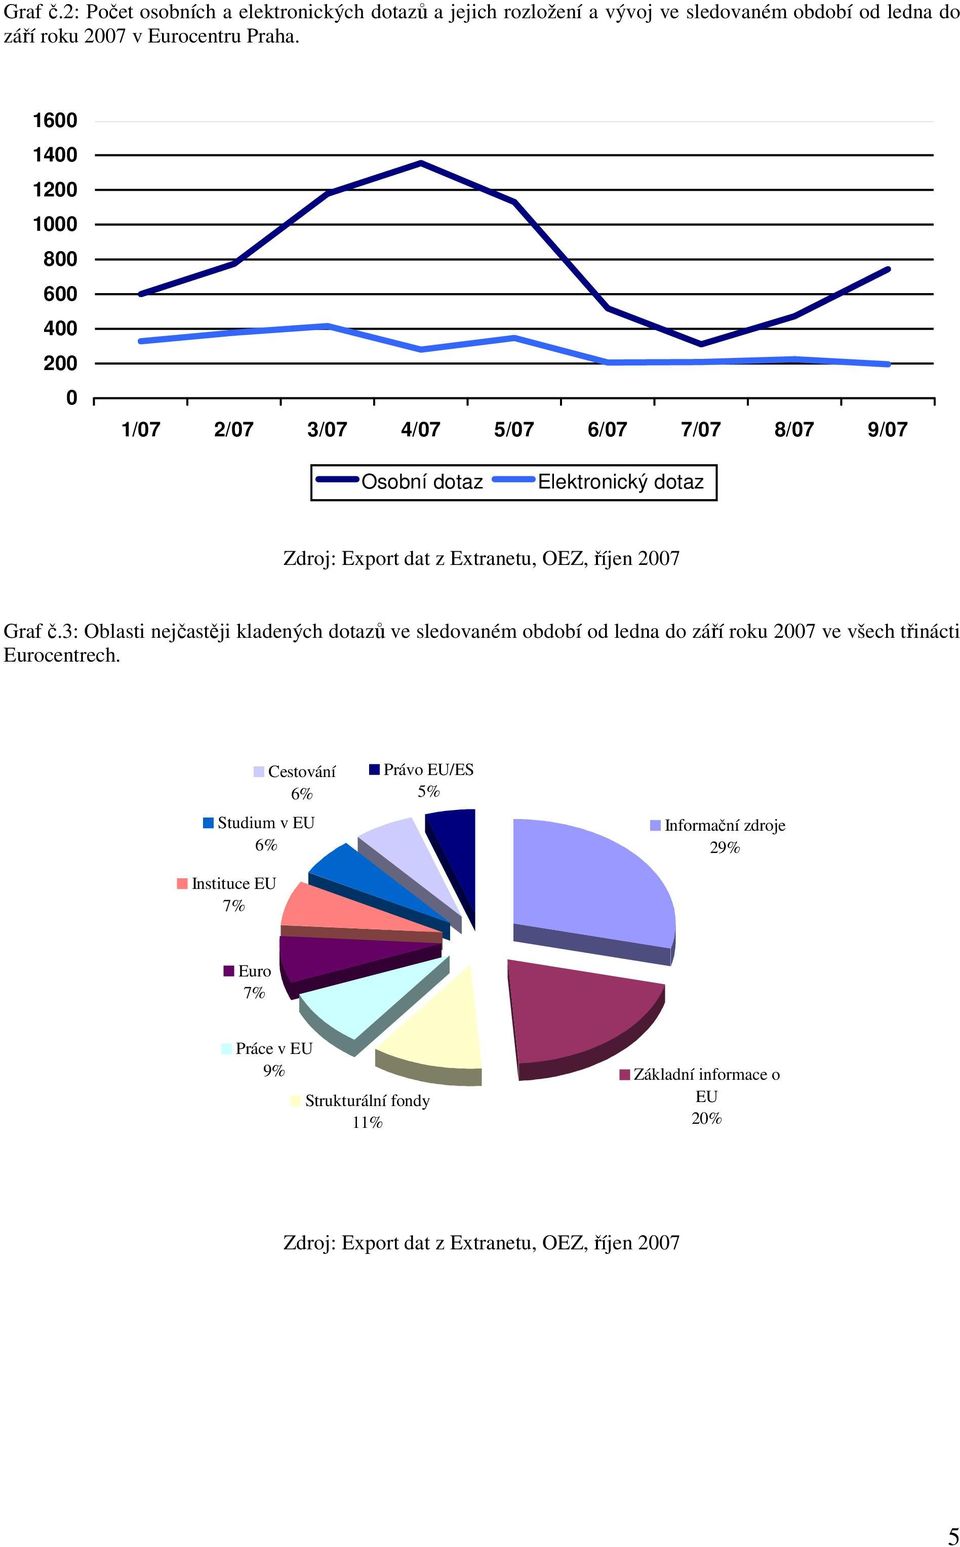 2007 Graf č.3: Oblasti nejčastěji kladených dotazů ve sledovaném období od ledna do září roku 2007 ve všech třinácti Eurocentrech.